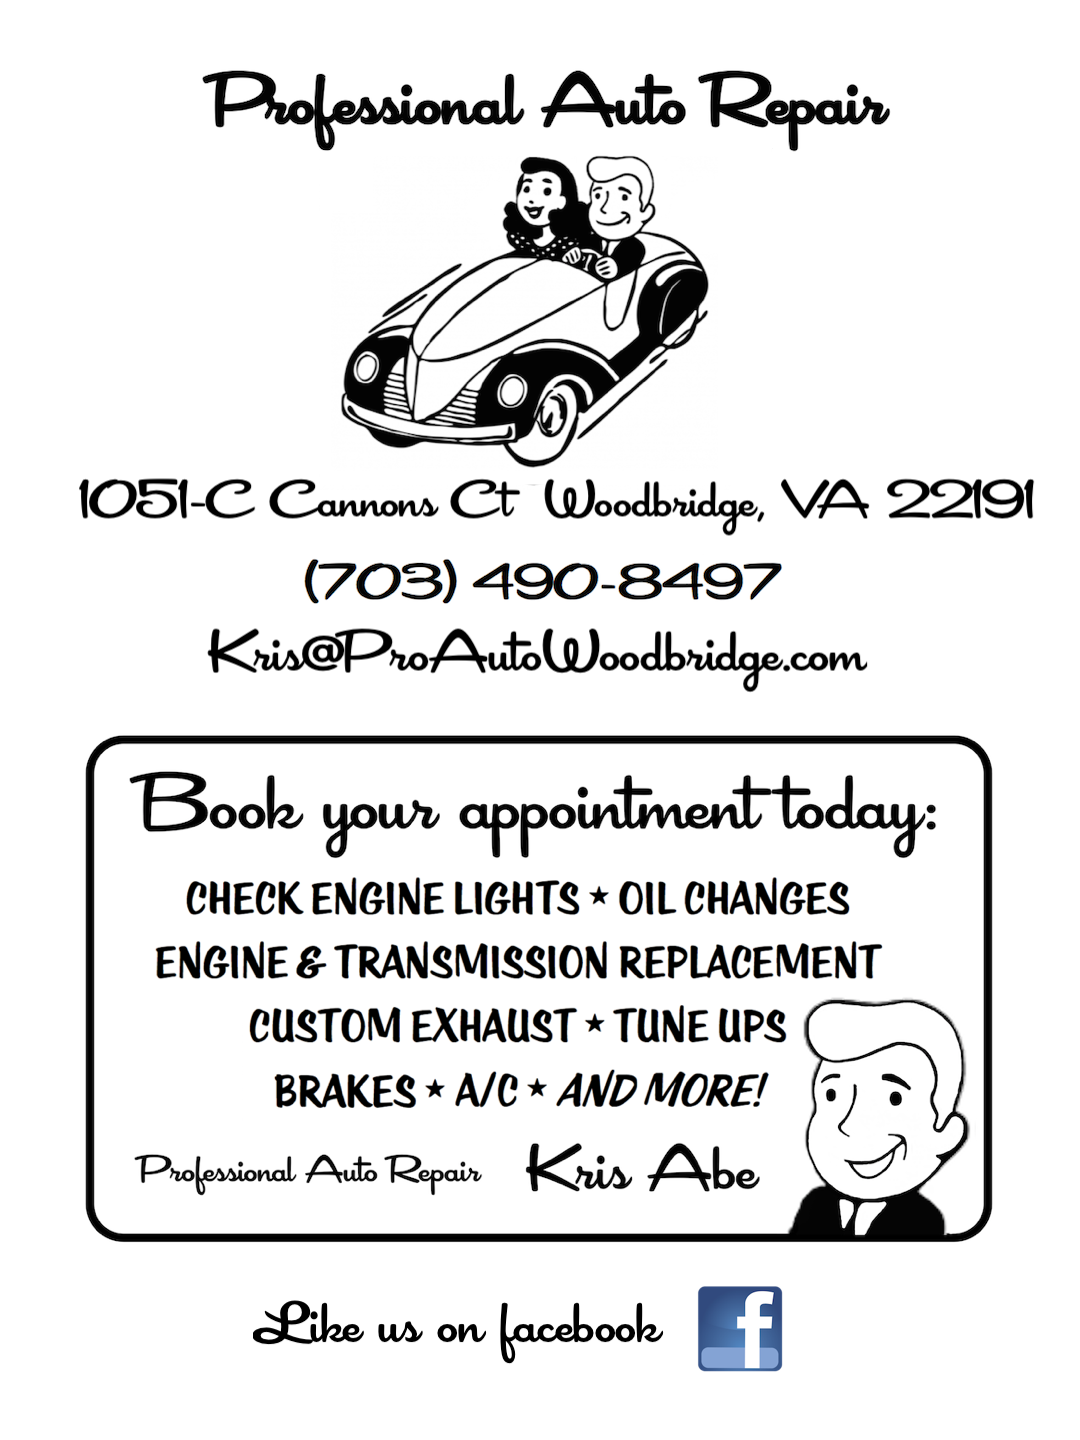 Professional Auto Repair, Woodbridge VA. 703-490-8497